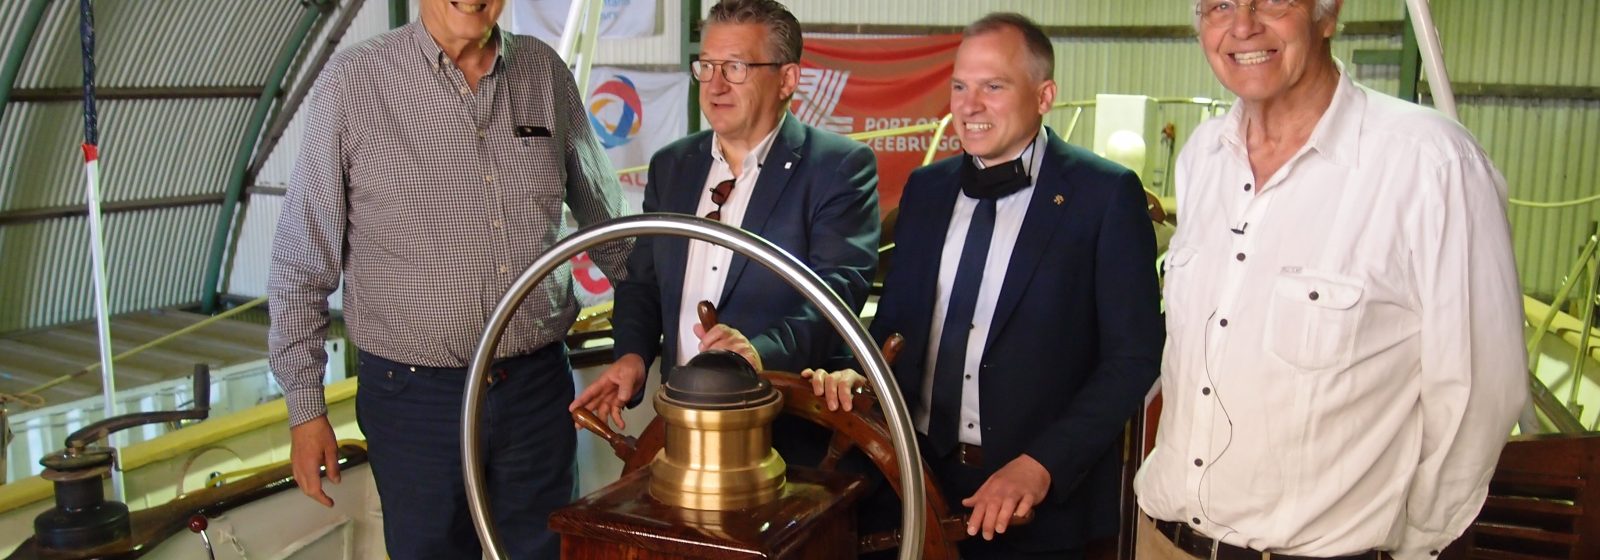 Staf Wittevrongel, burgemeester en havenvoorzitter Zeebrugge Dirk De fauw, Vlaams minister Matthias Diependaele en Piet Wittevrongel